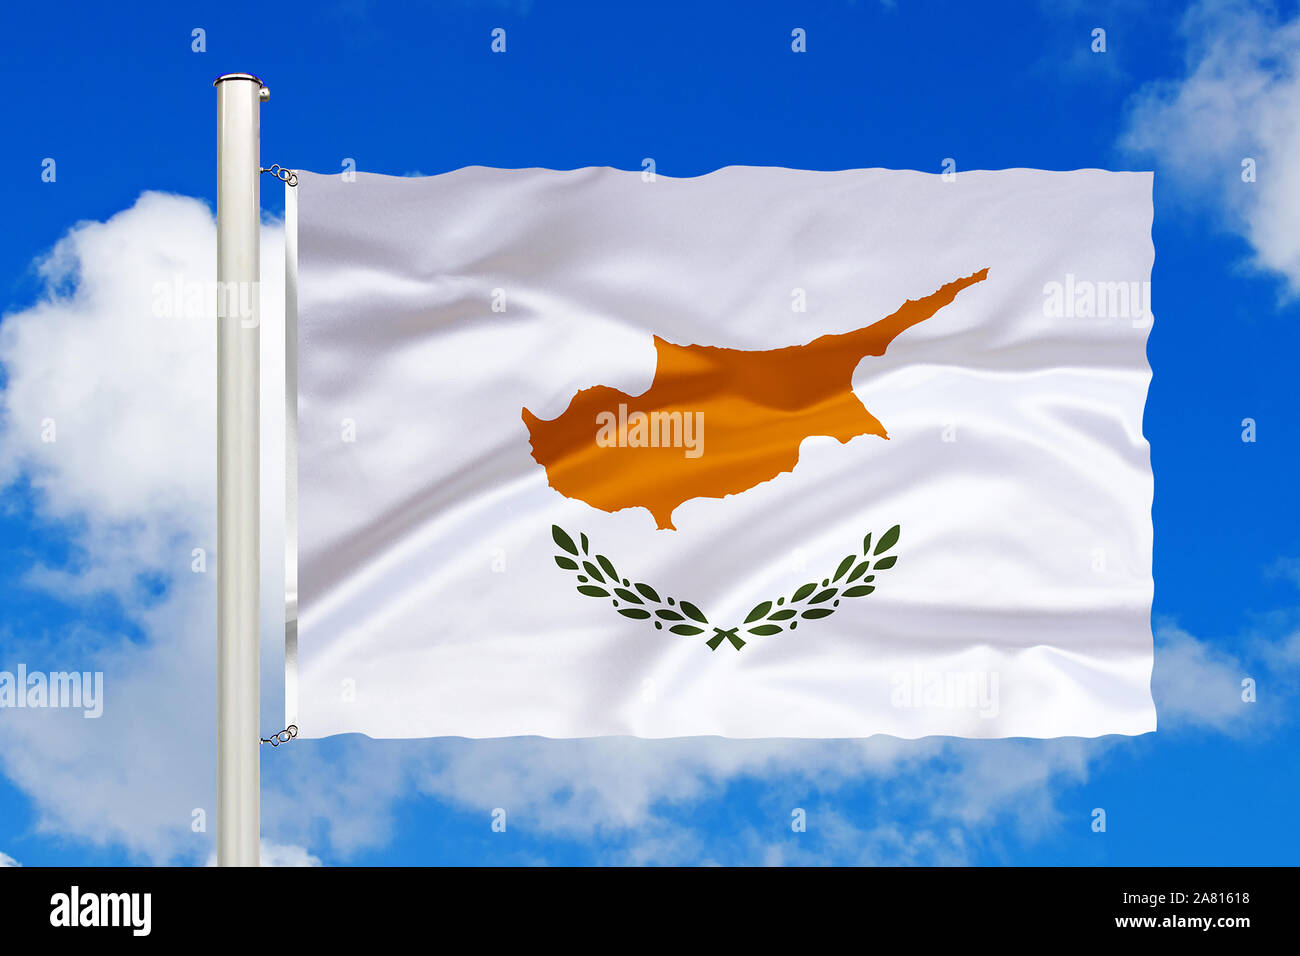 Zypern, Mittlerer Osten, geteilte Insel, türkisch, griechisch, Nationalfahne, Nationalflagge, Fahne, Flagge, Flaggenmast, Cumulus Wolken vor blauen Hi Foto Stock